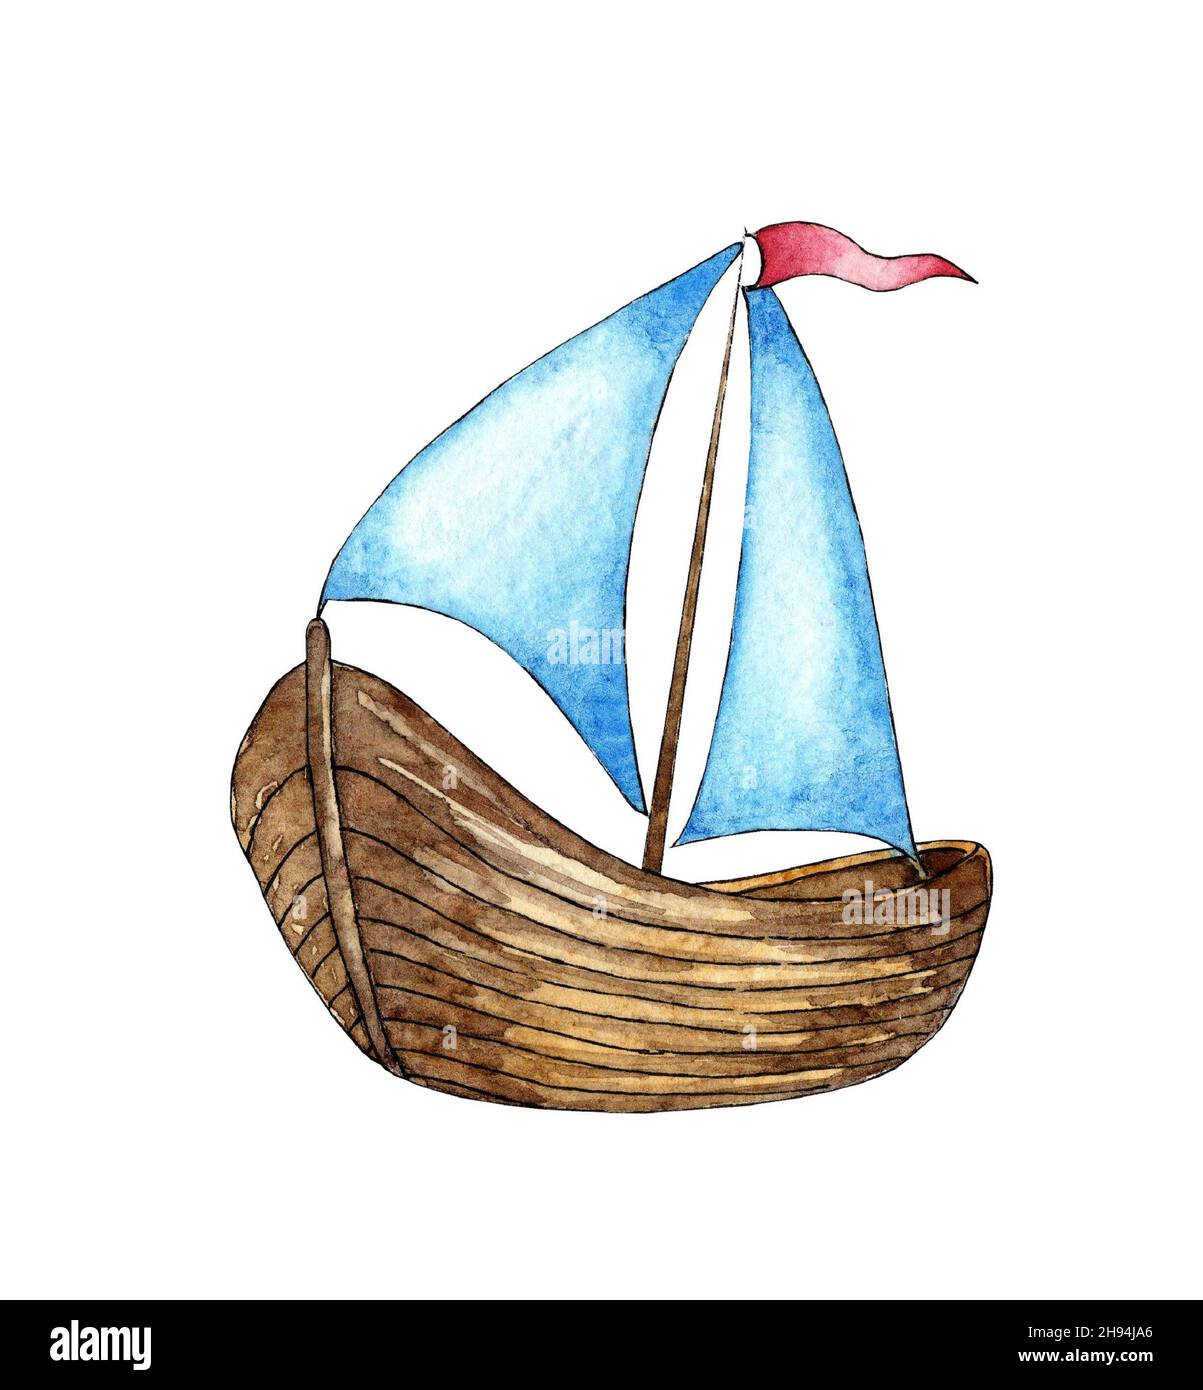 Aquarell-Illustration eines weißen Segelschiffs mit roter Flagge. Seereise mit dem Boot, Sommerurlaub und Segelregatta Meeresbild. Isoliert auf Whi Stockfoto